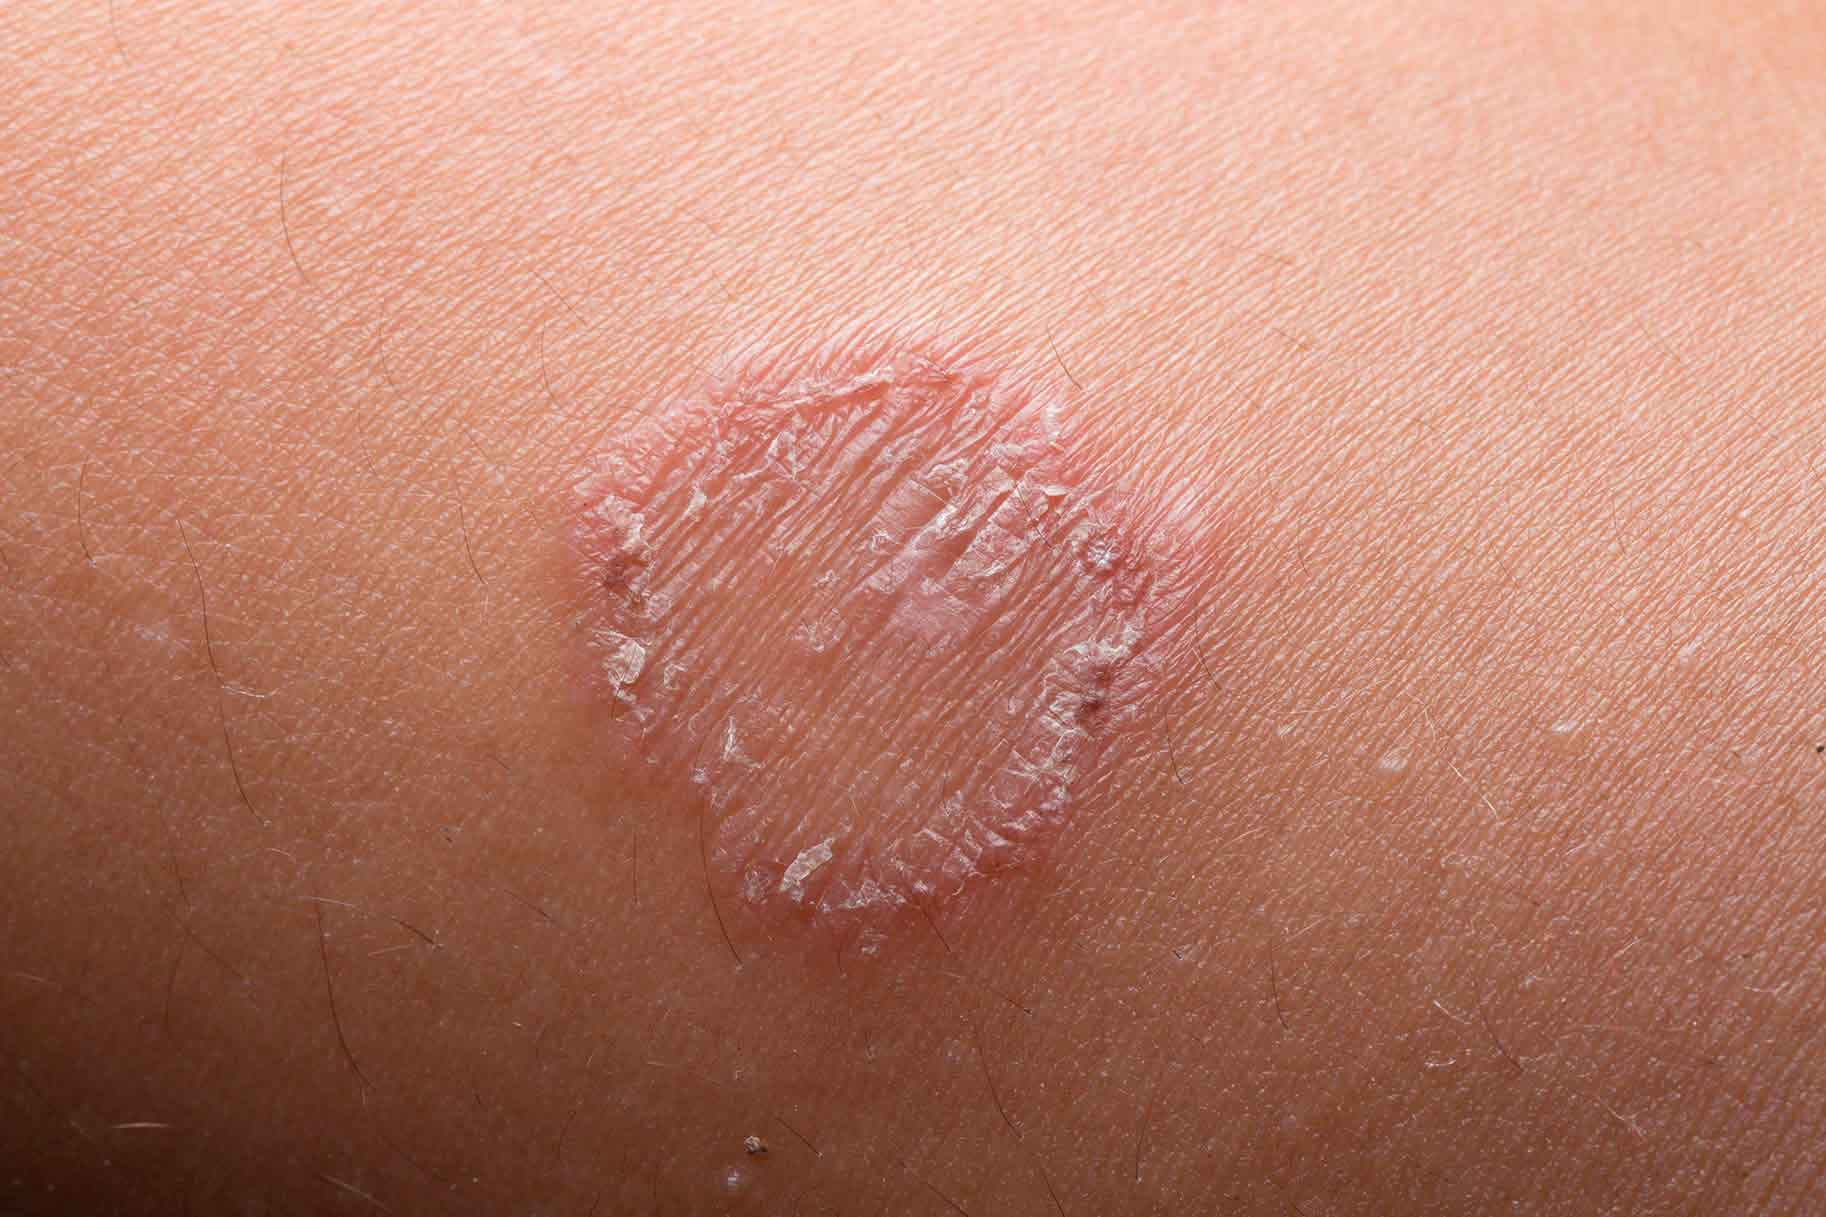 primo piano di eczema della pelle causato da tigna del corpo